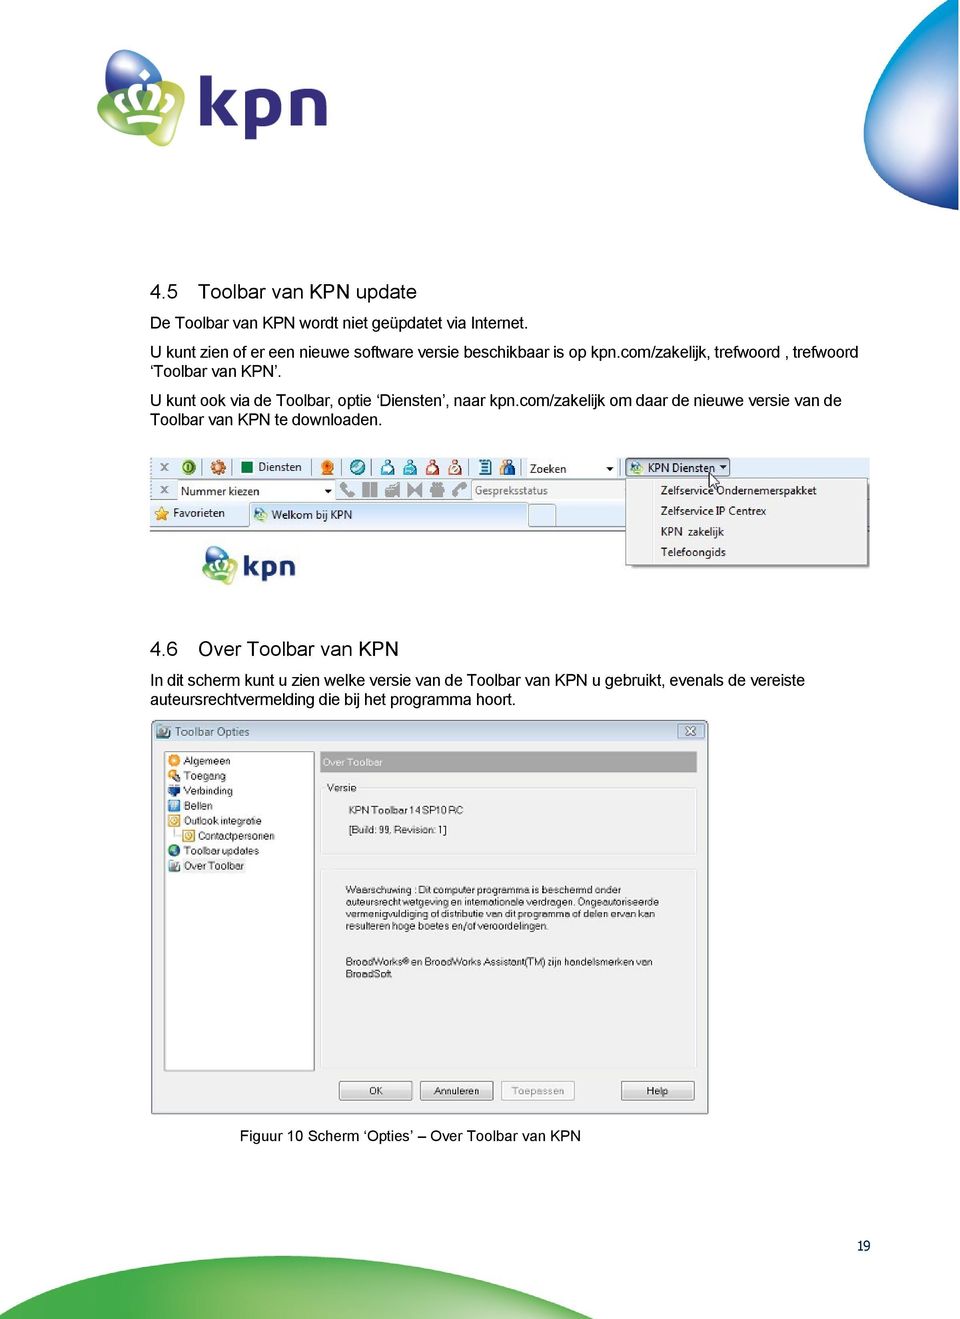 U kunt ook via de Toolbar, optie Diensten, naar kpn.com/zakelijk om daar de nieuwe versie van de Toolbar van KPN te downloaden. 4.